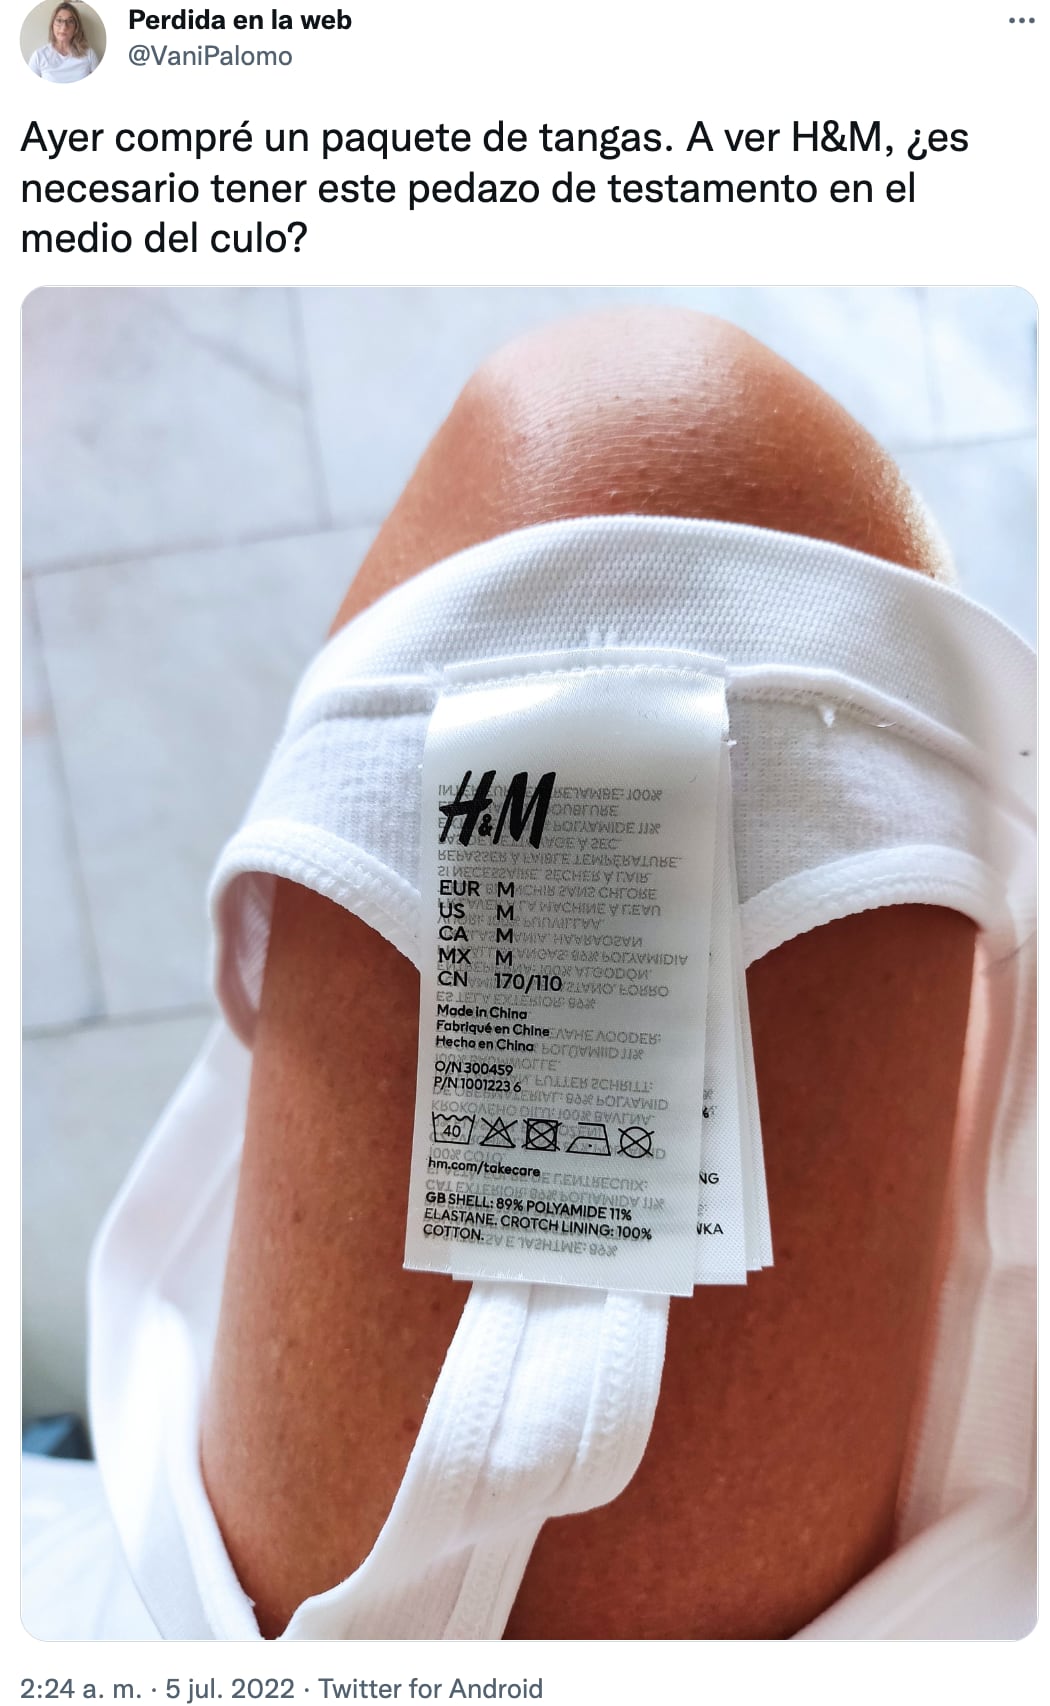 Reclamó a H&M por las en una tanga y se el hilo marcas que generan desperdicio